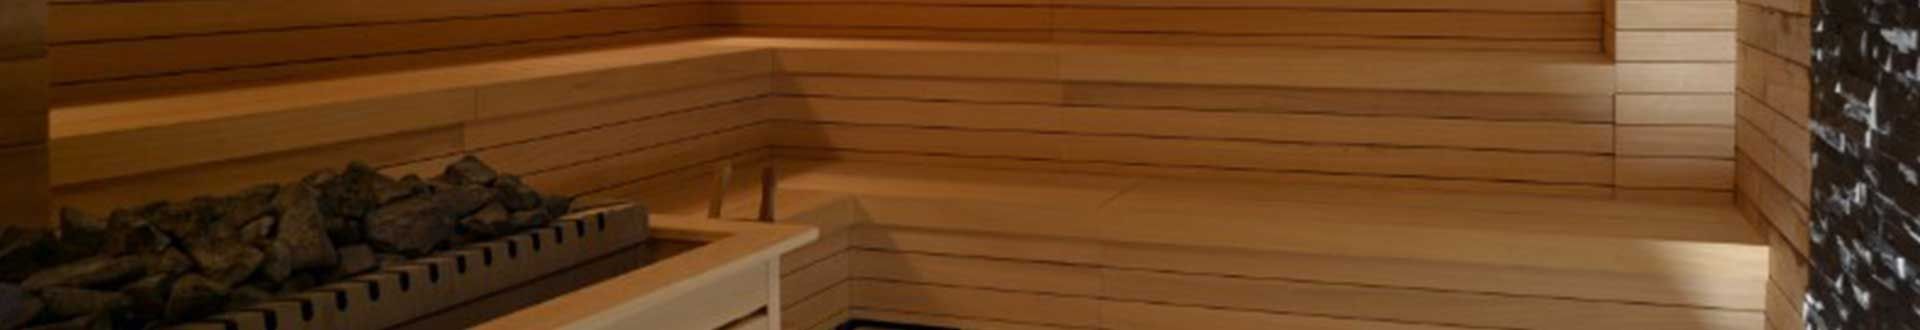 Stufe e Accessori Sauna